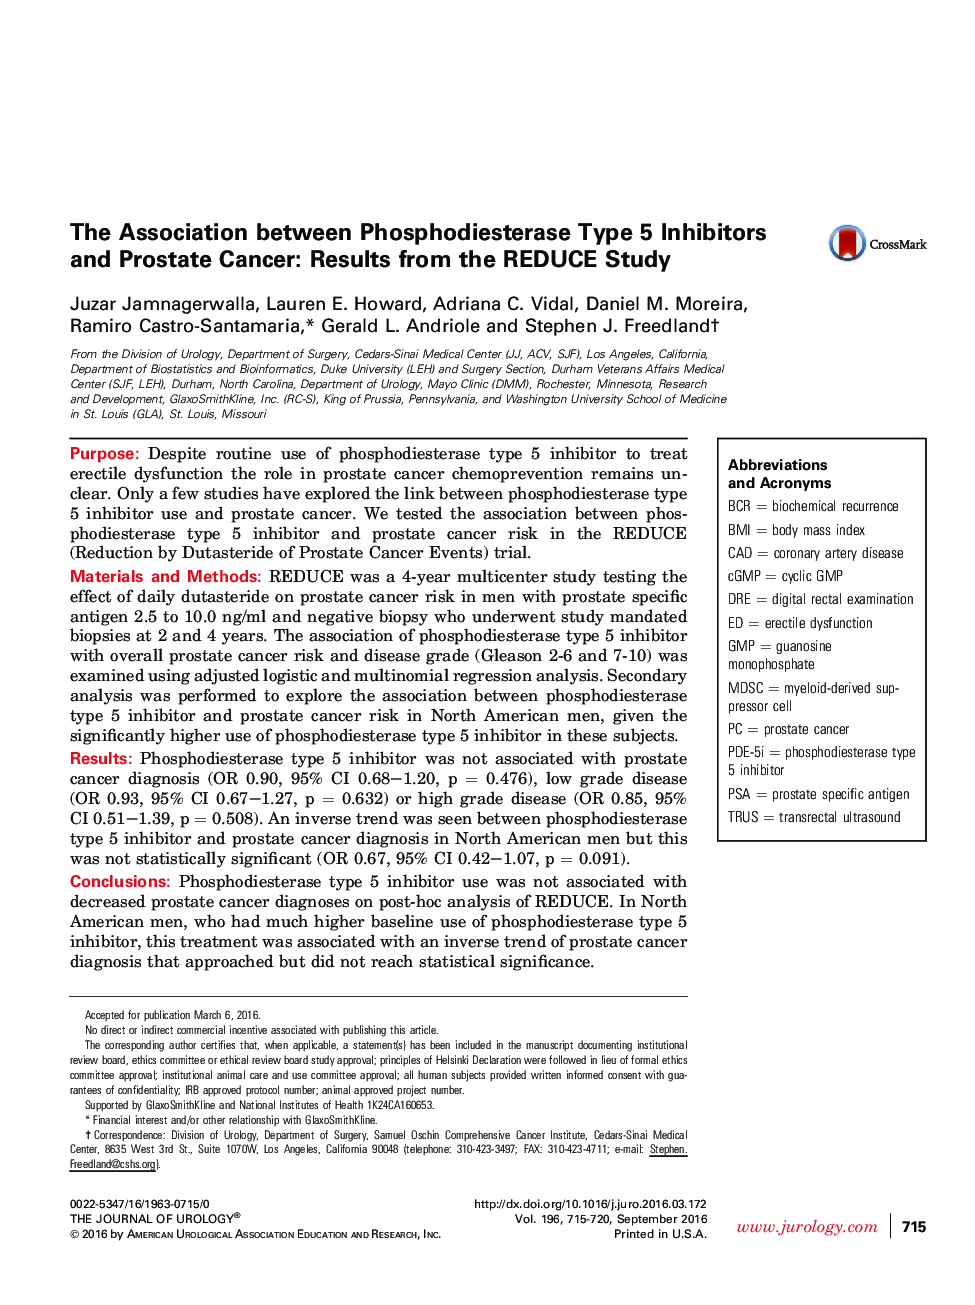 ارتباط بین مهارکننده های نوع 5 فسفودیاستراز و سرطان پروستات: نتایج تحقیق REDUCE